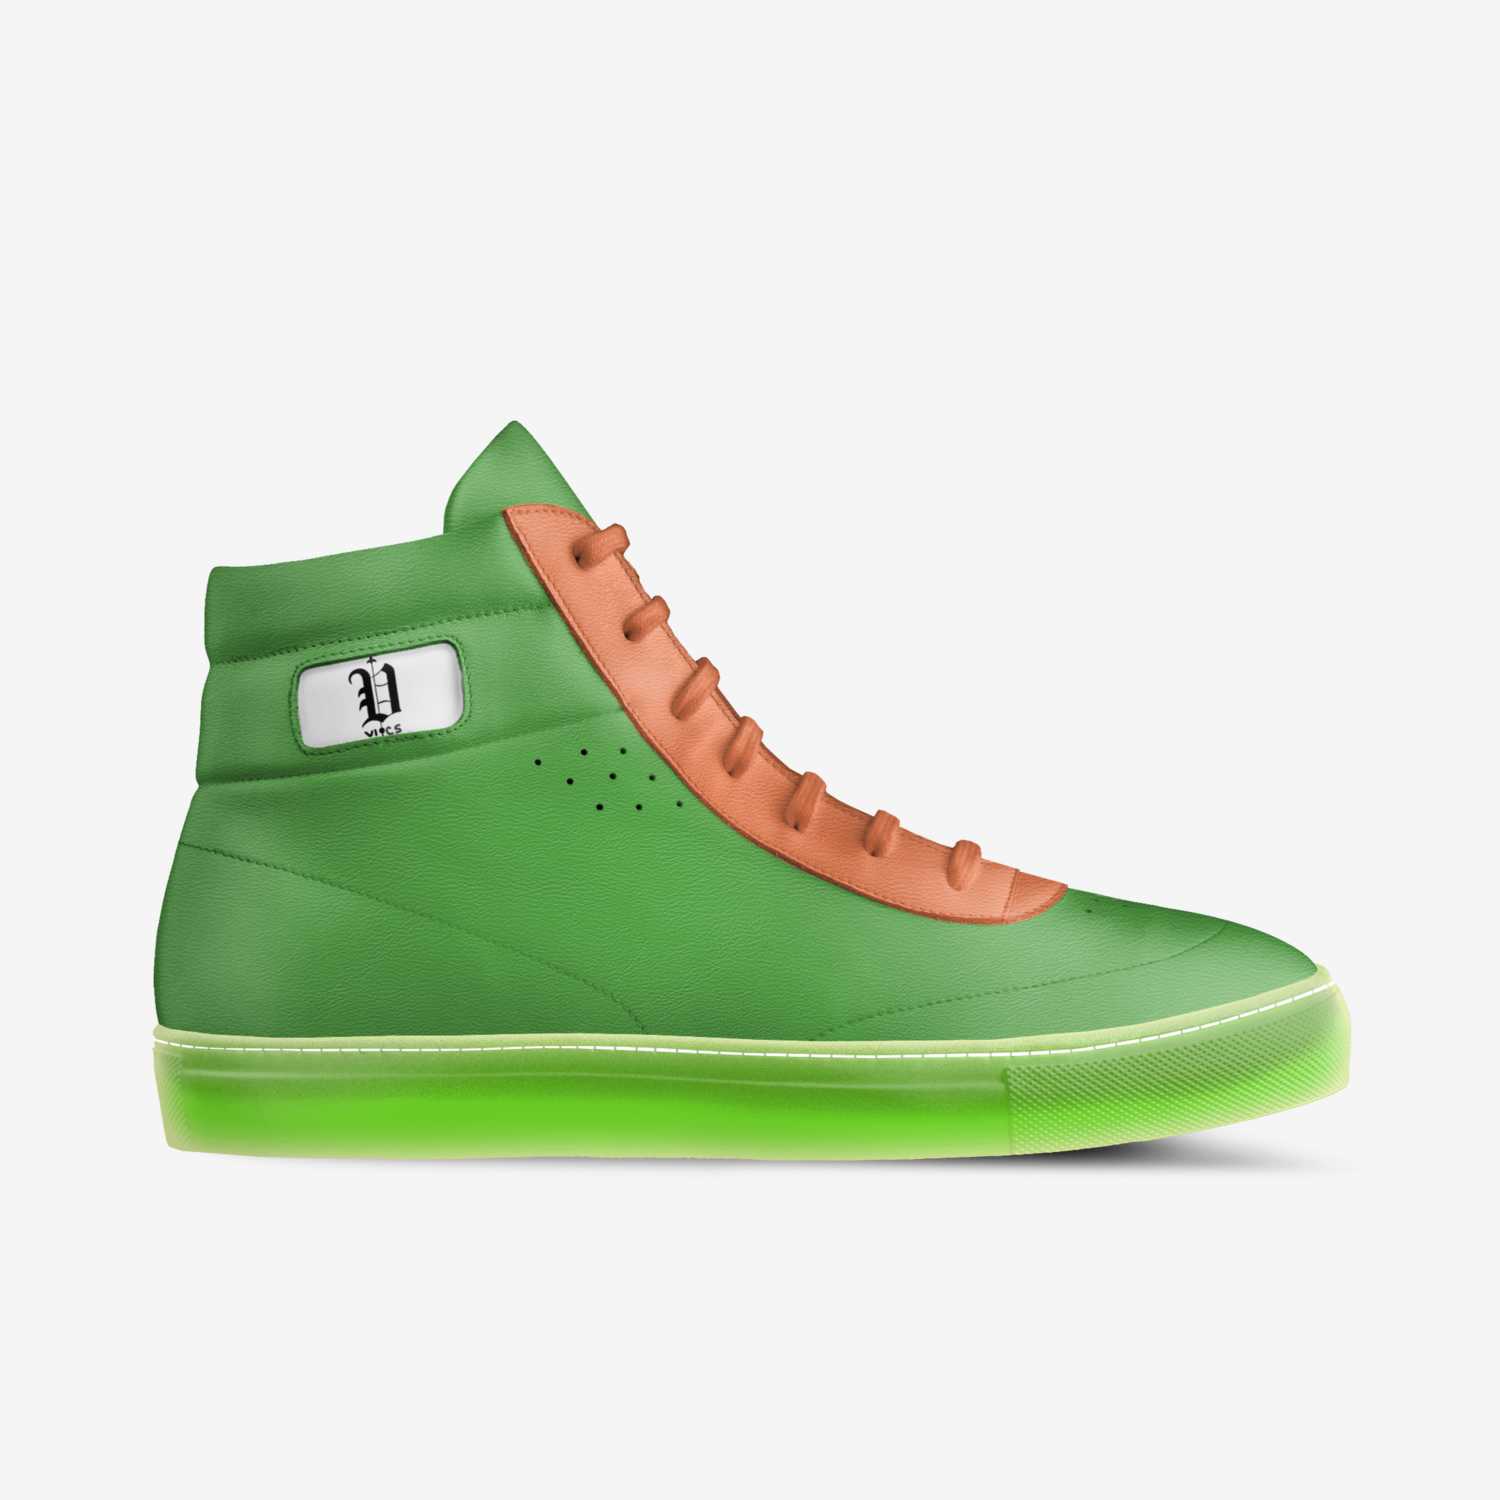 Vics neon | A Custom Shoe concept by Brayden Murphy